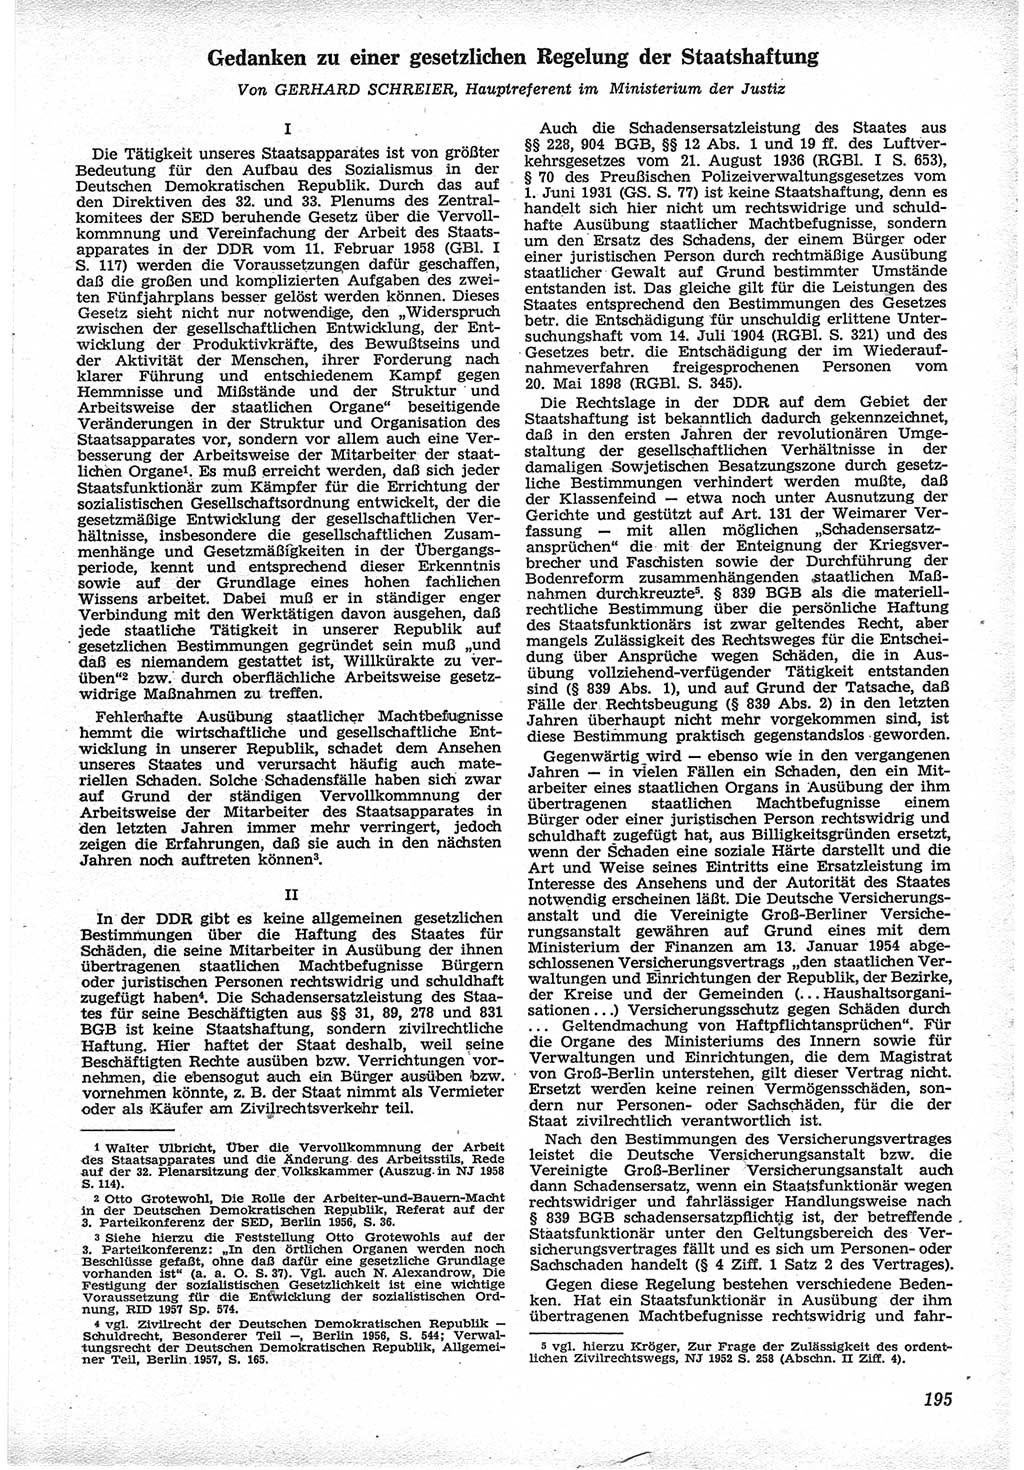 Neue Justiz (NJ), Zeitschrift für Recht und Rechtswissenschaft [Deutsche Demokratische Republik (DDR)], 12. Jahrgang 1958, Seite 195 (NJ DDR 1958, S. 195)